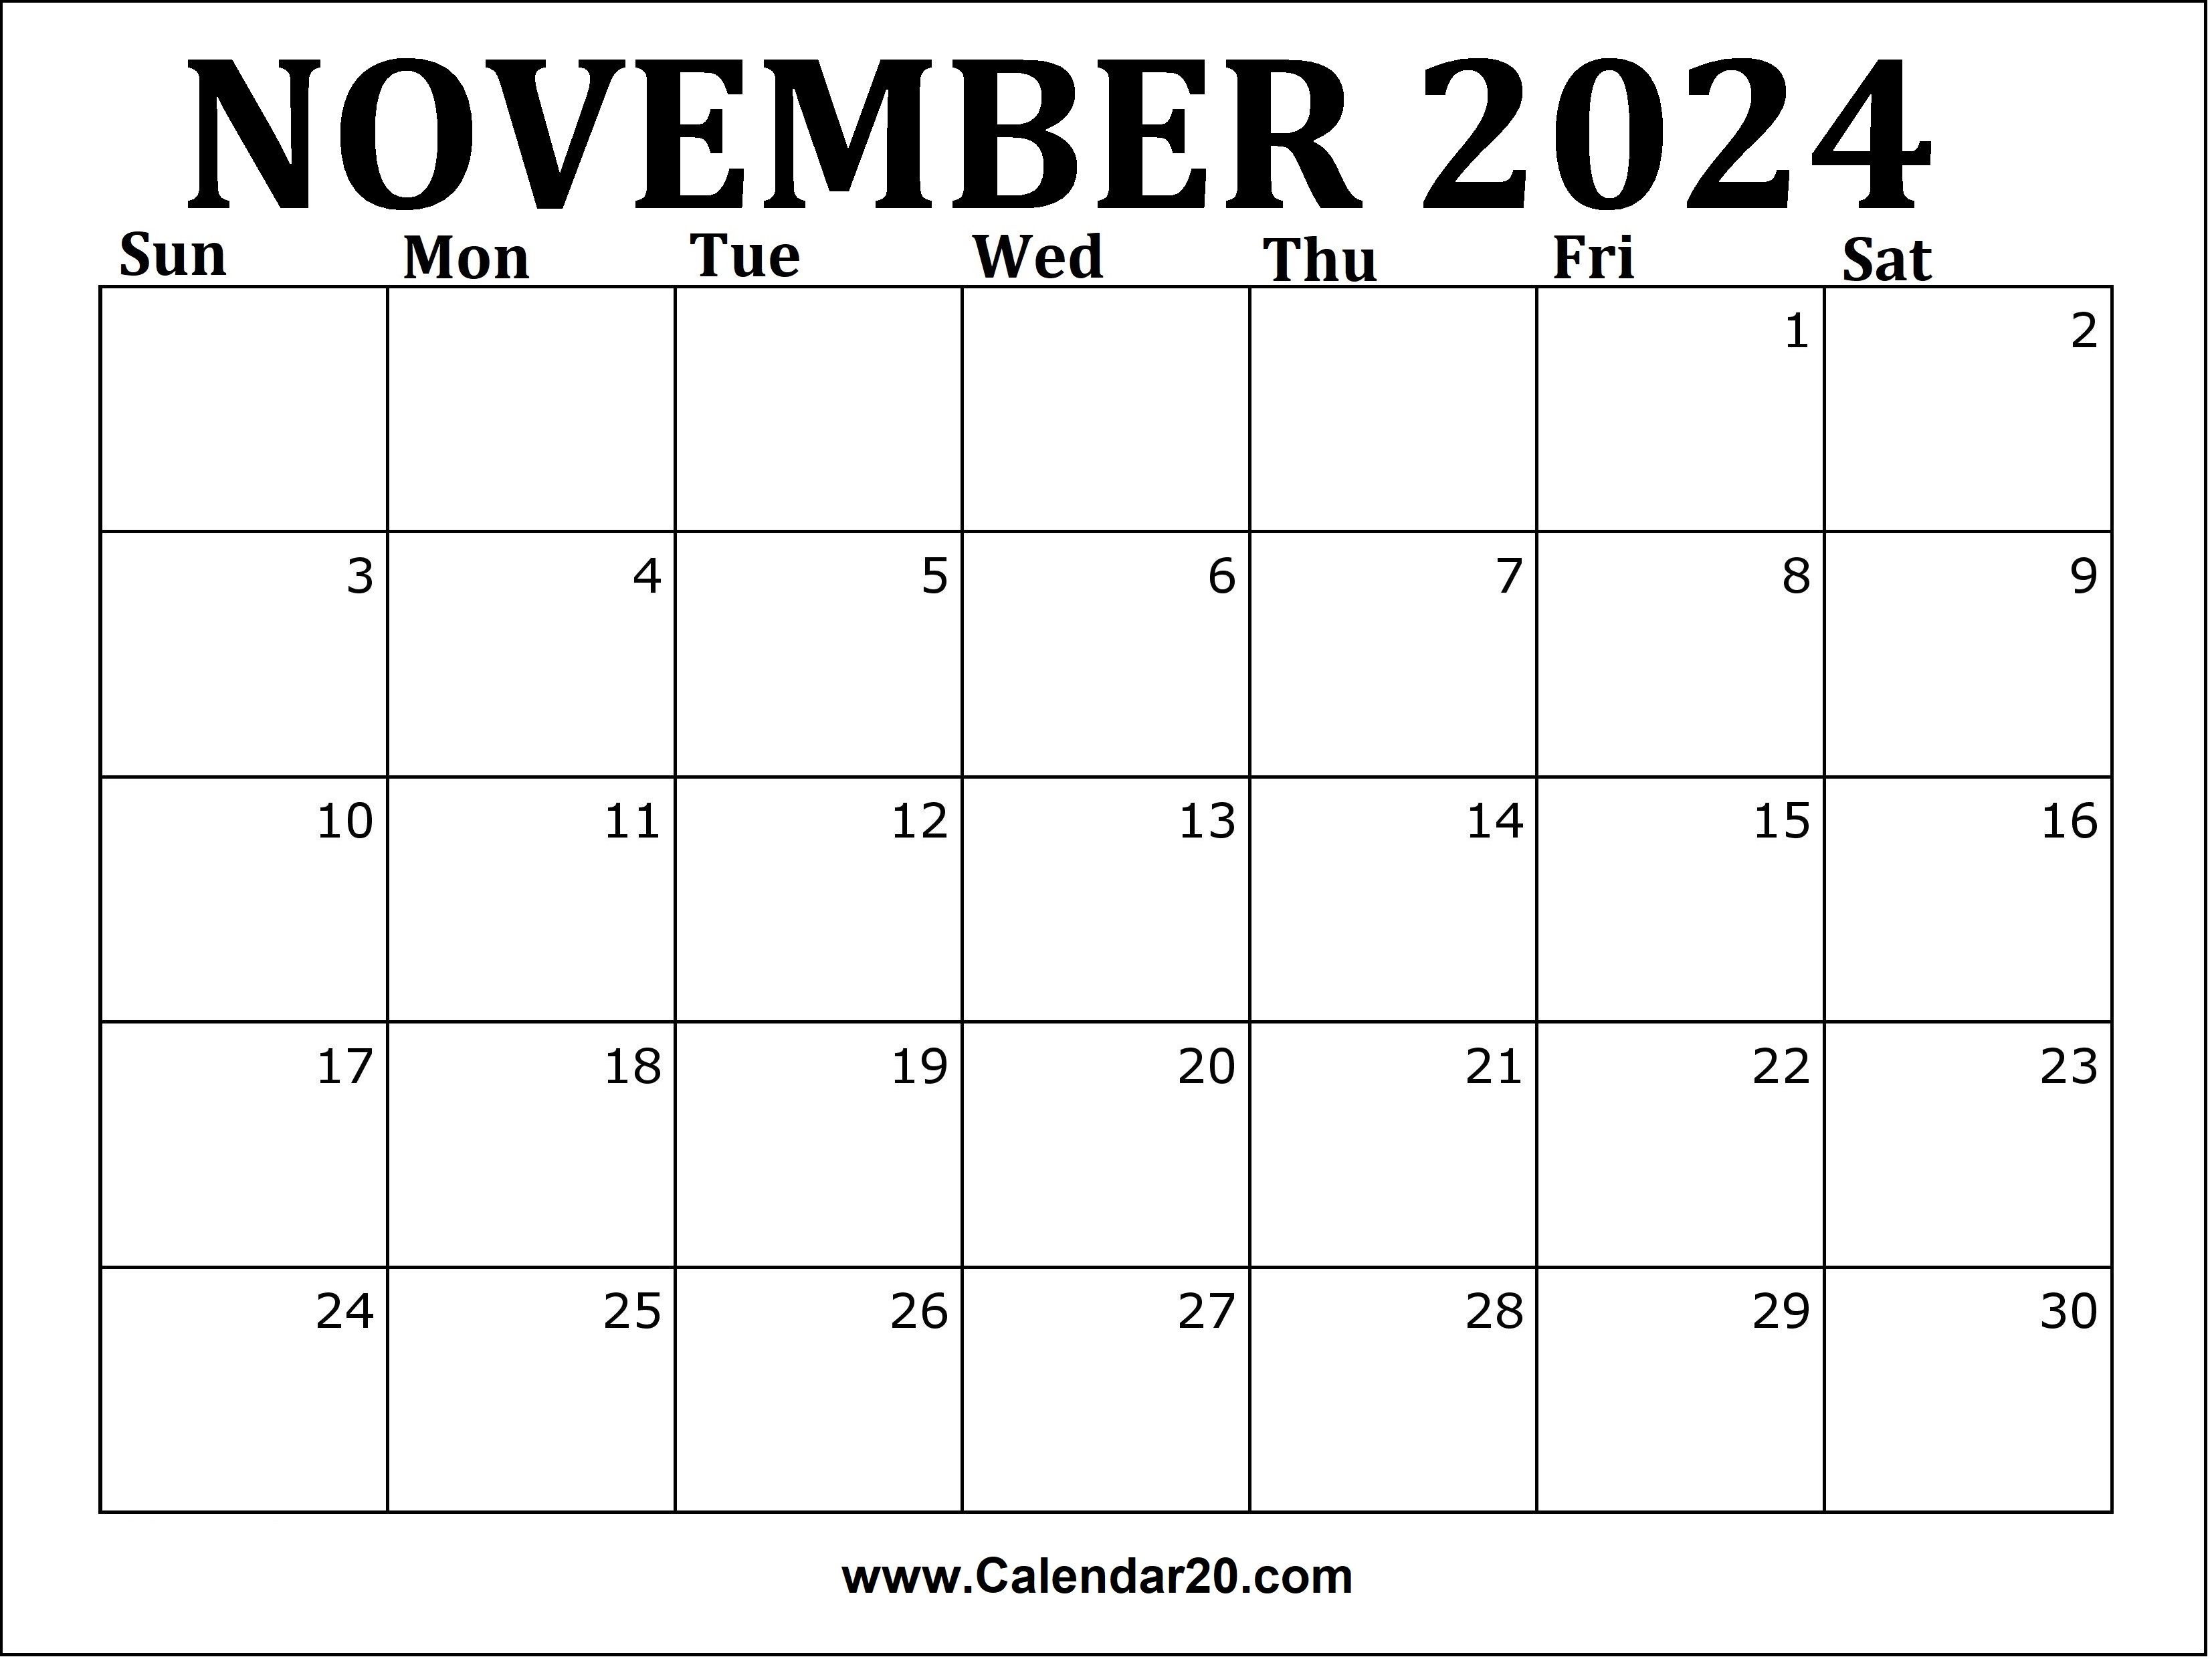 November 2024 Printable Calendar Calendar20